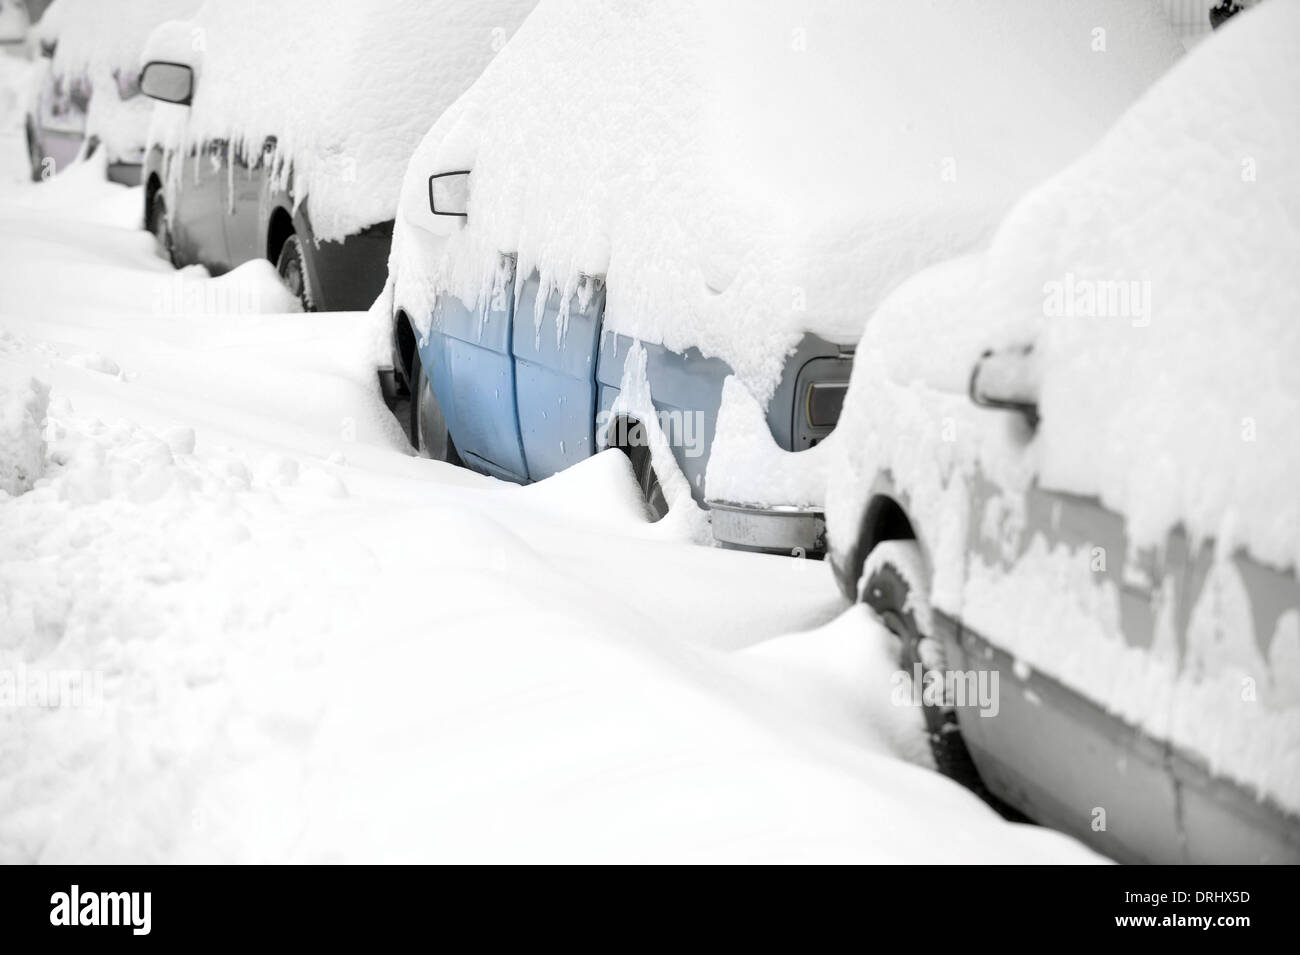 Verschneite Autos nach starkem Schneefall Stockfoto